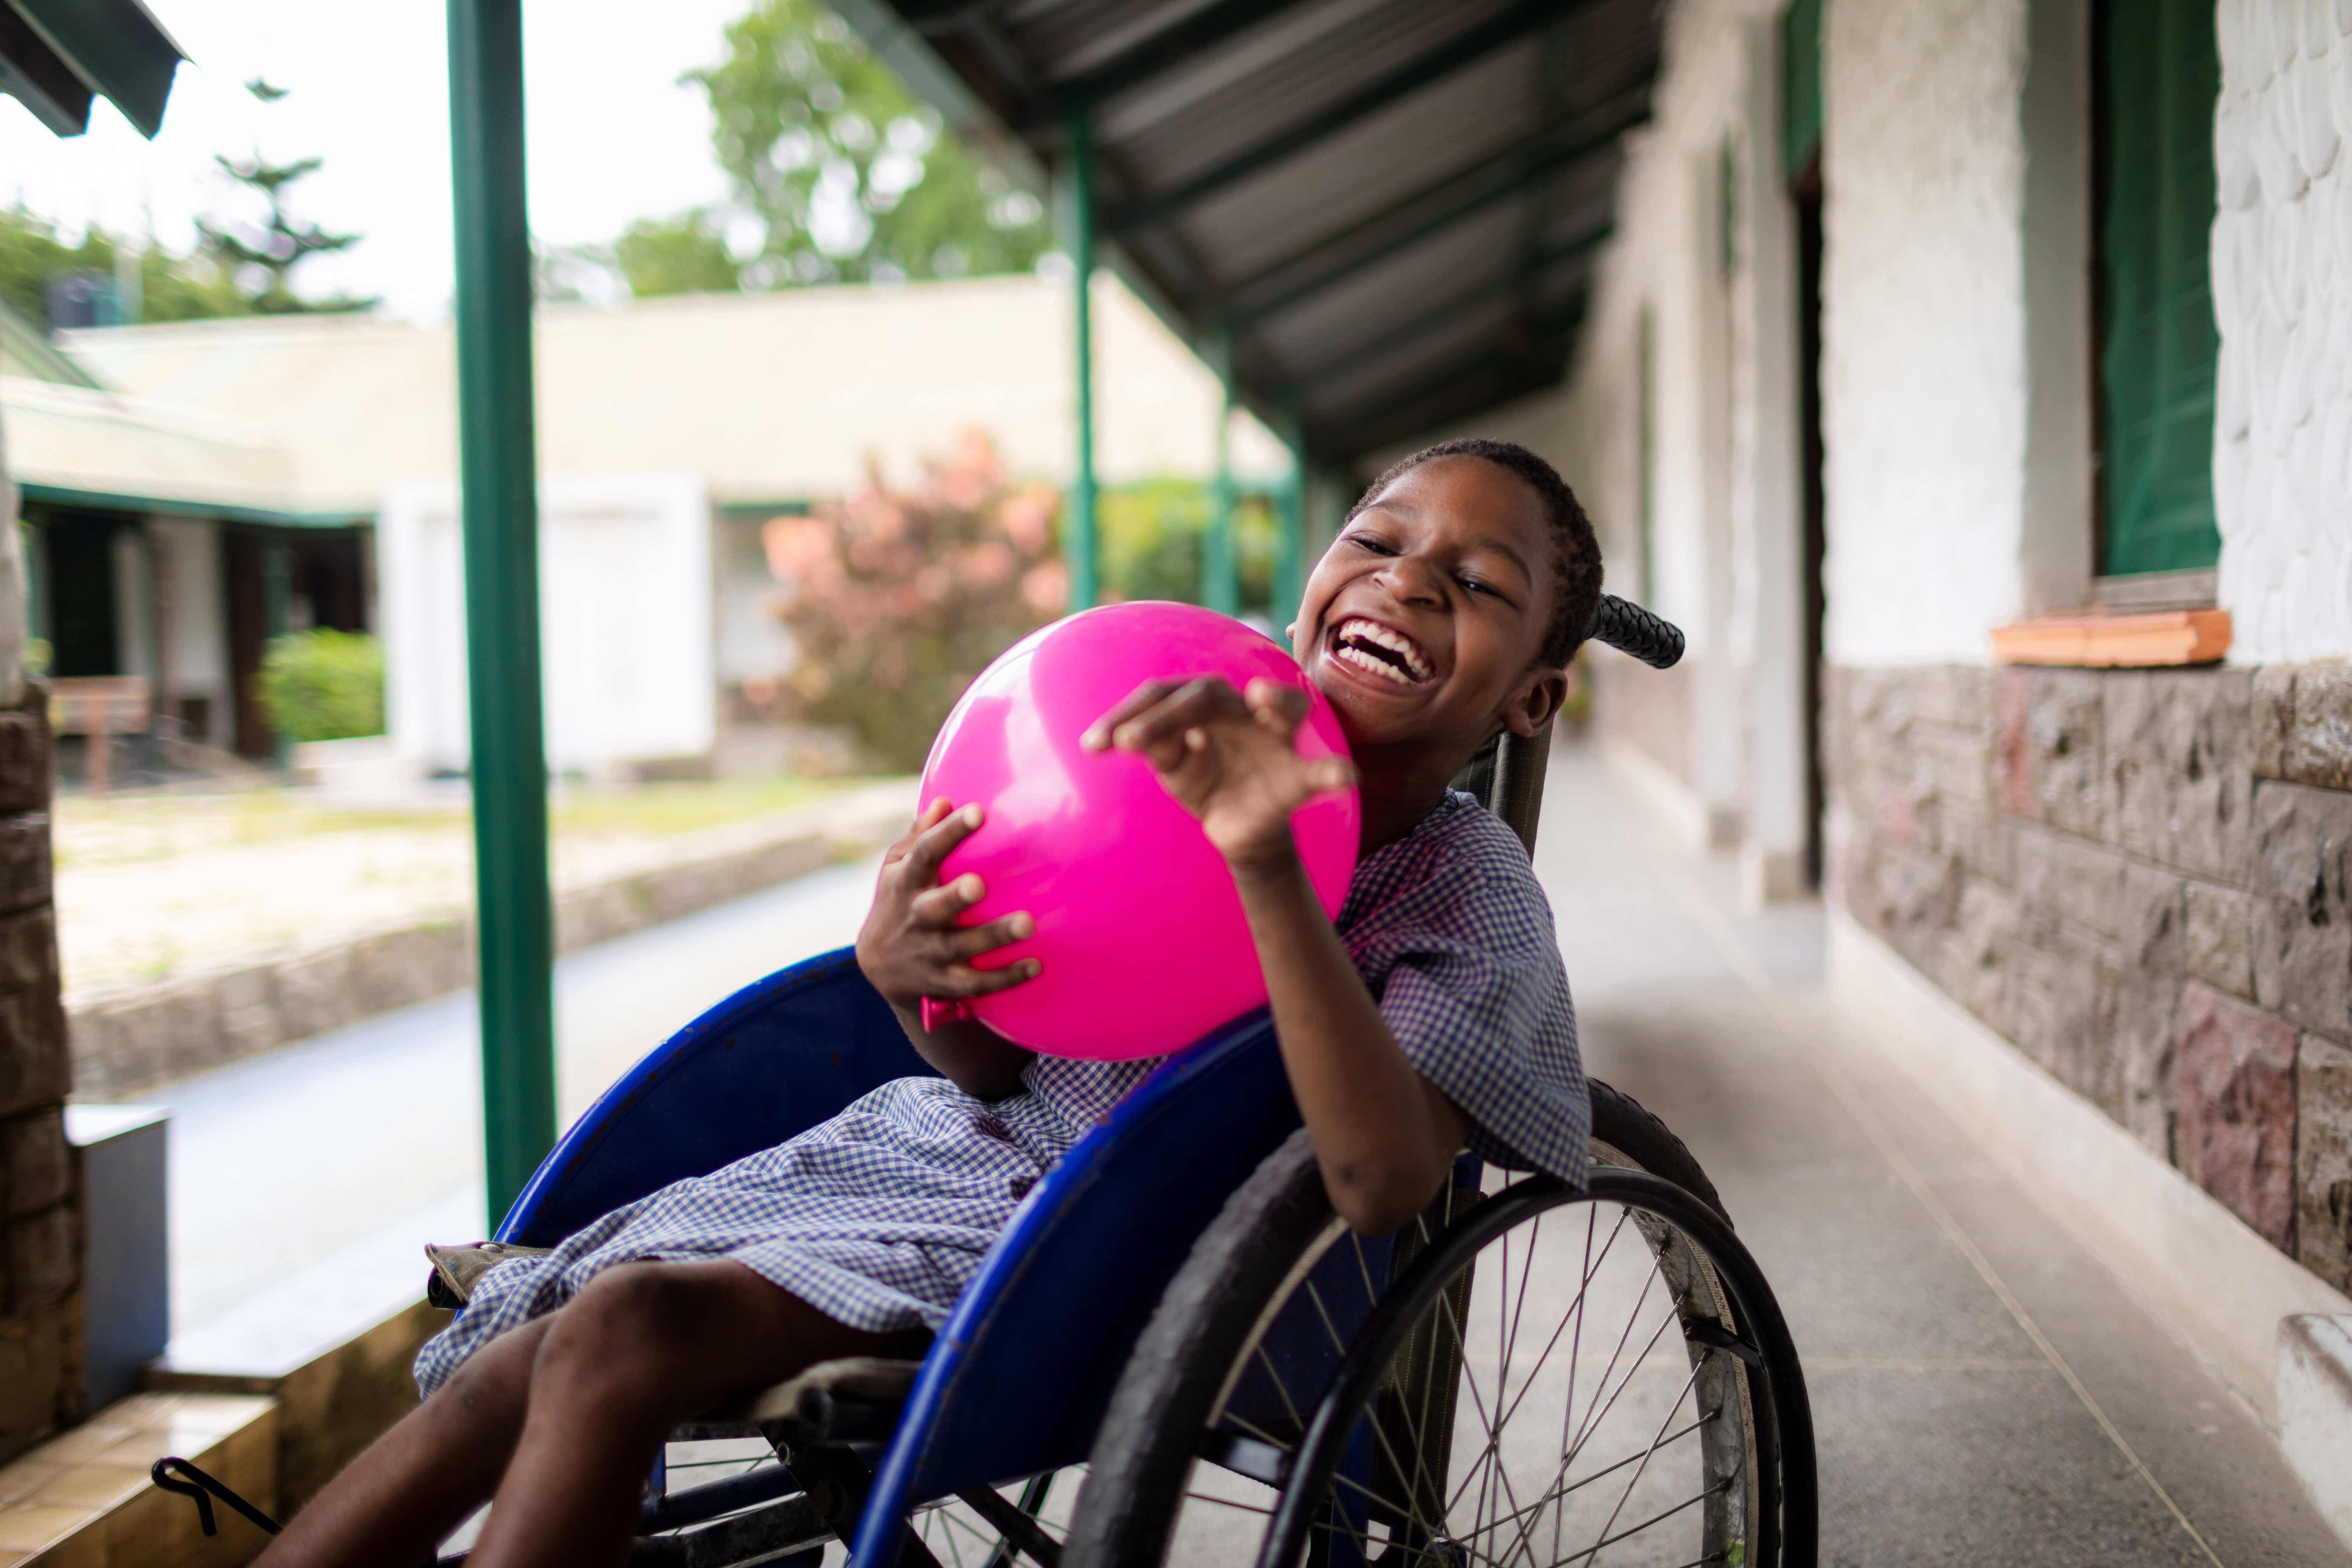 Junge im Rollstuhl hält einen Ball und lacht. (Quelle: Lars Heidrich)